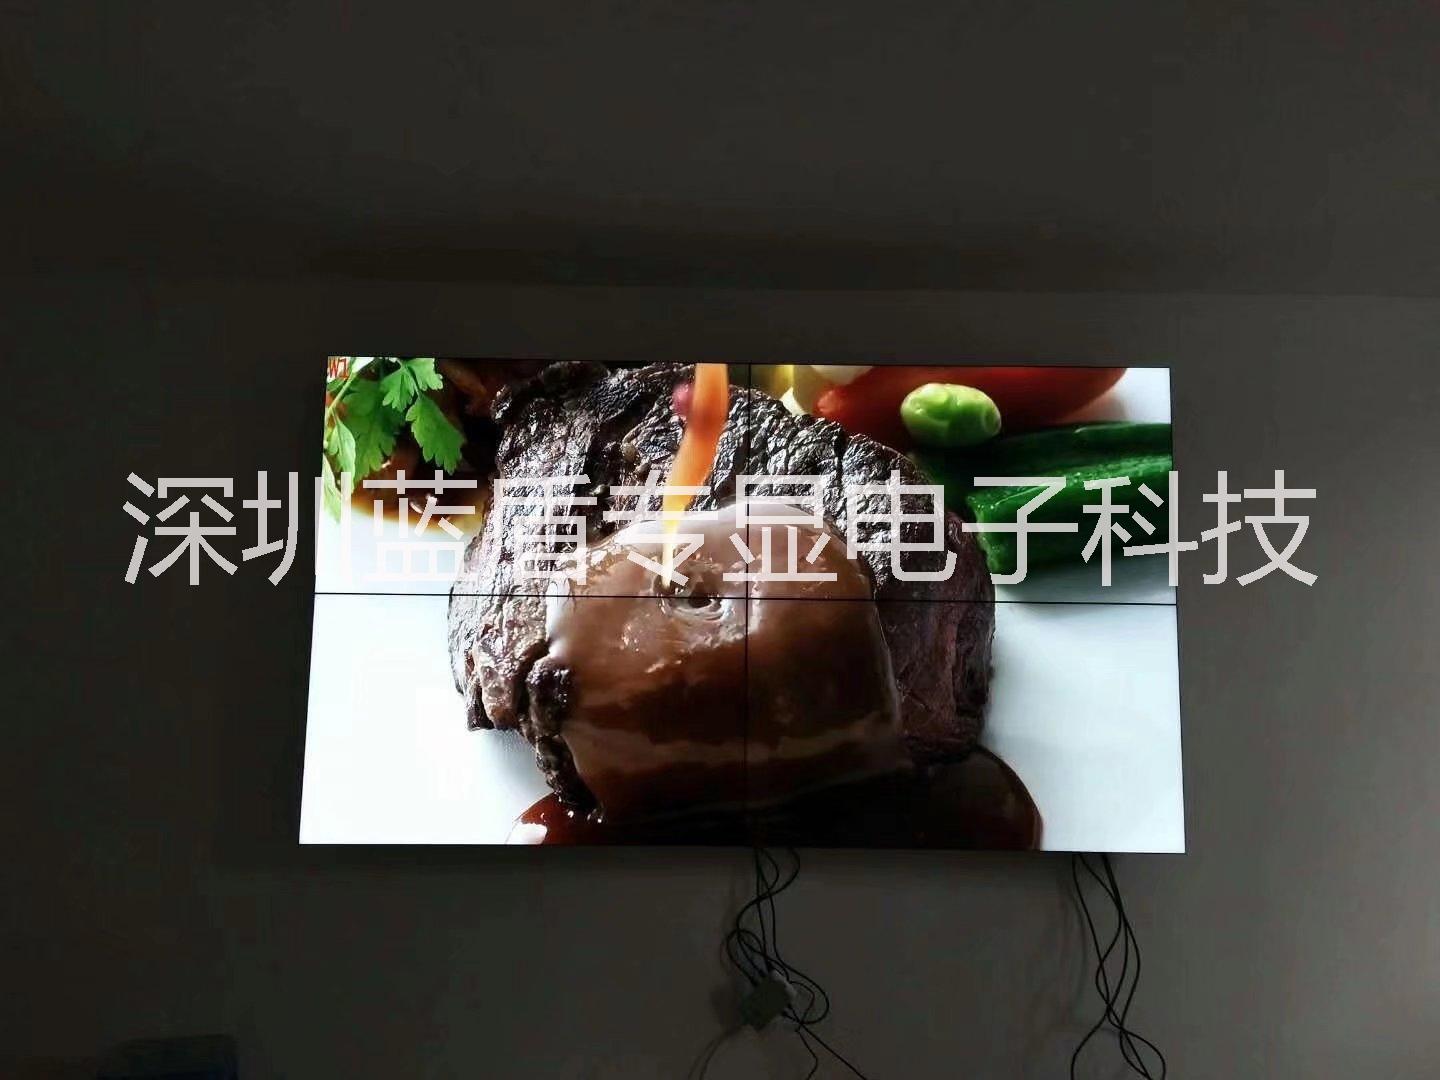 深圳市最窄拼接屏/LED大屏厂家